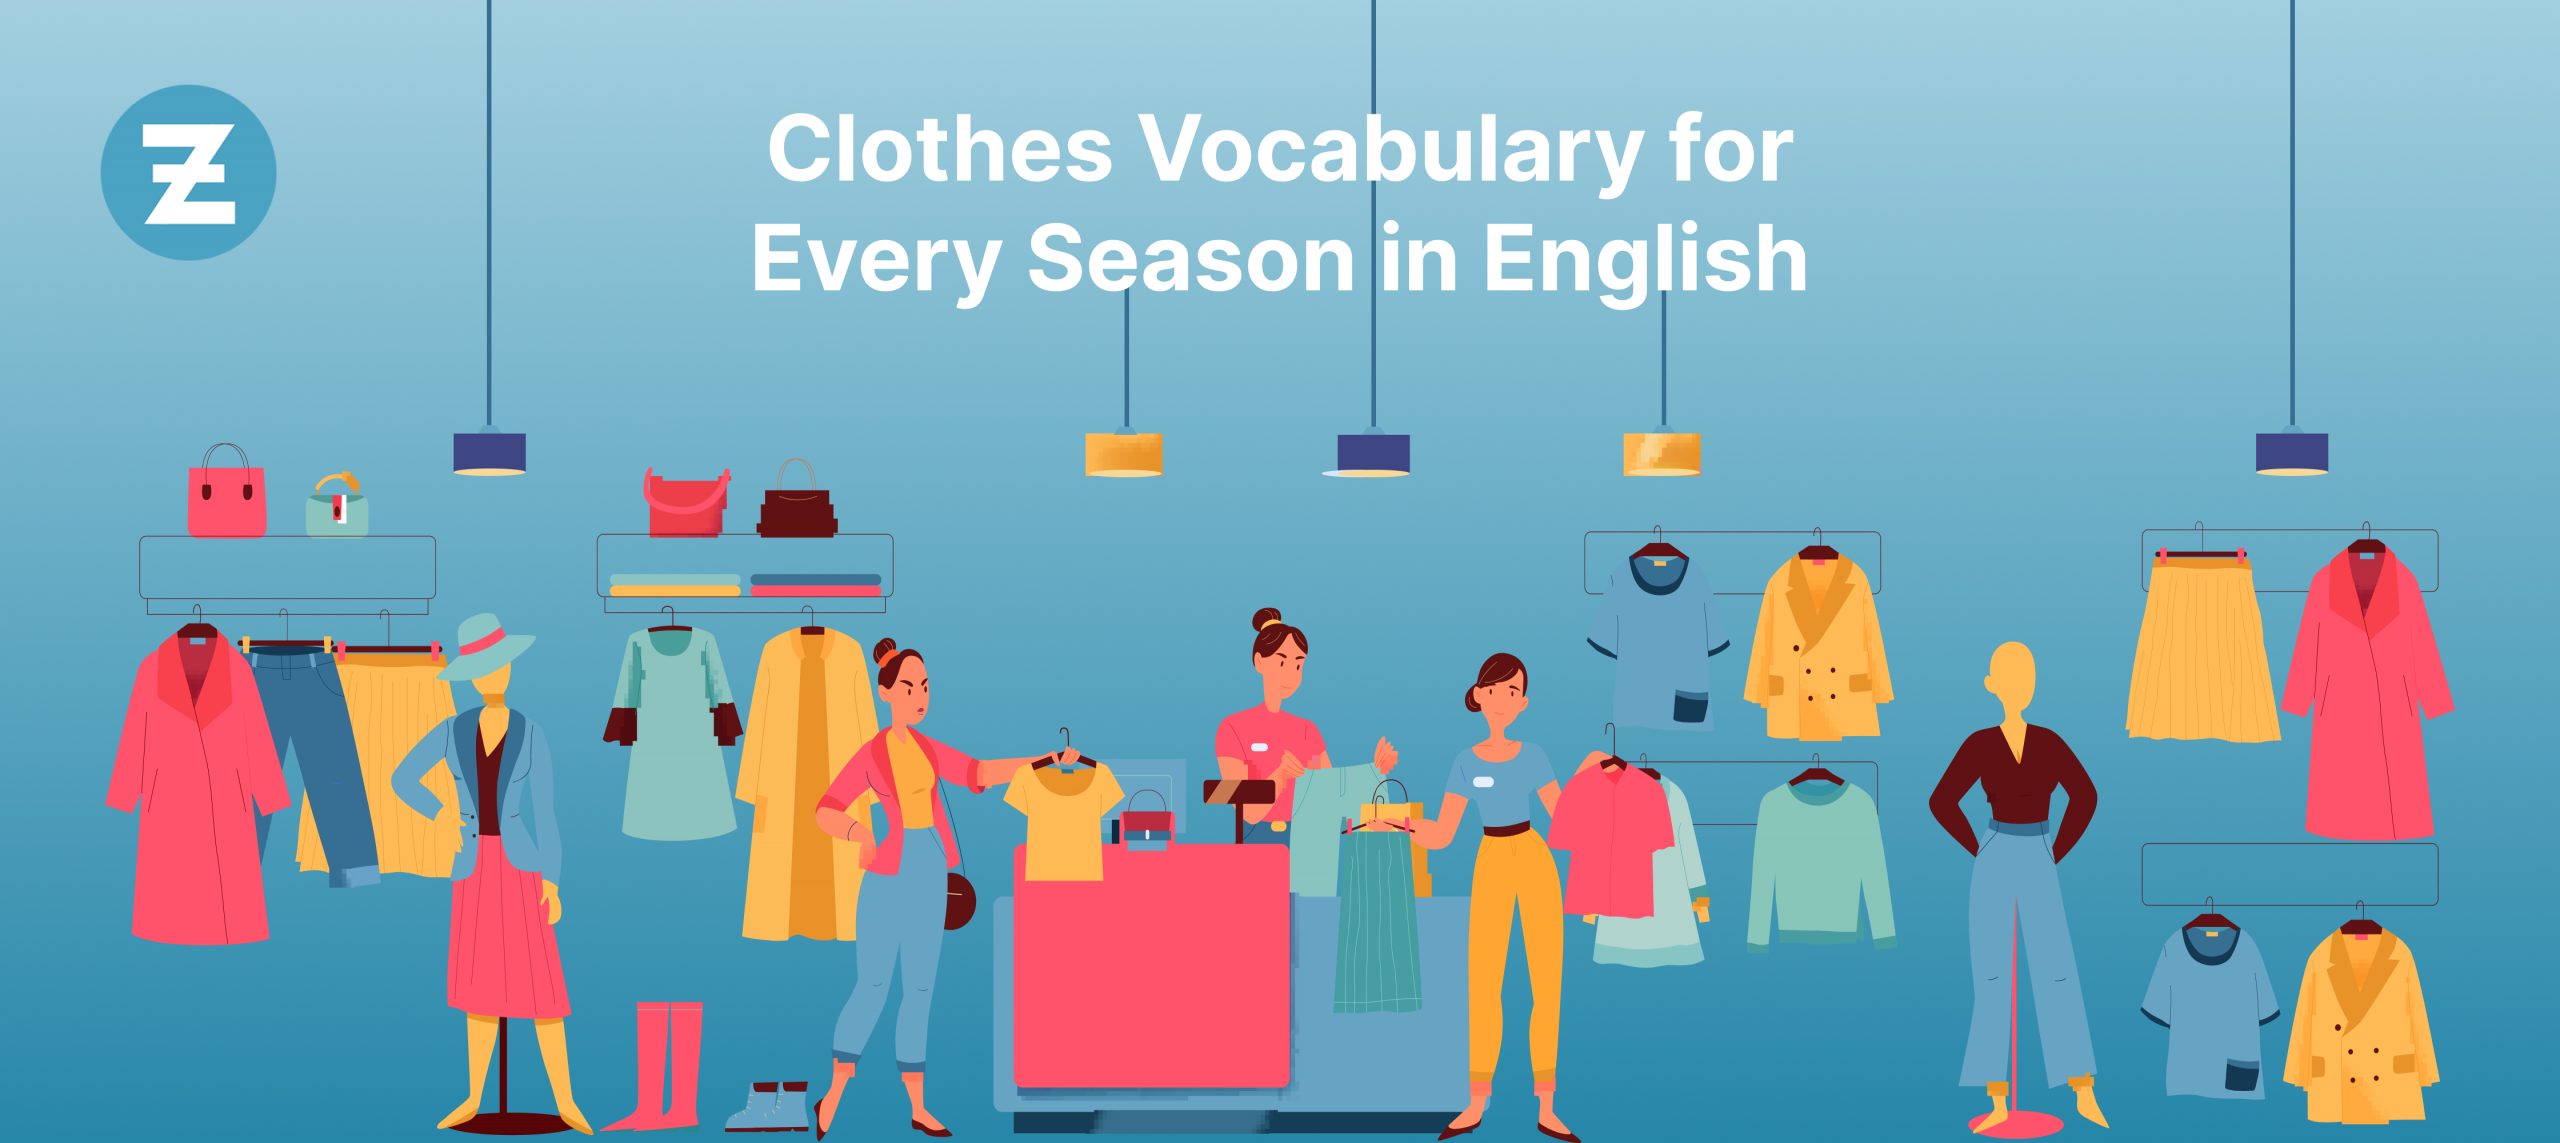 Essential Clothes Vocabulary for Every Season